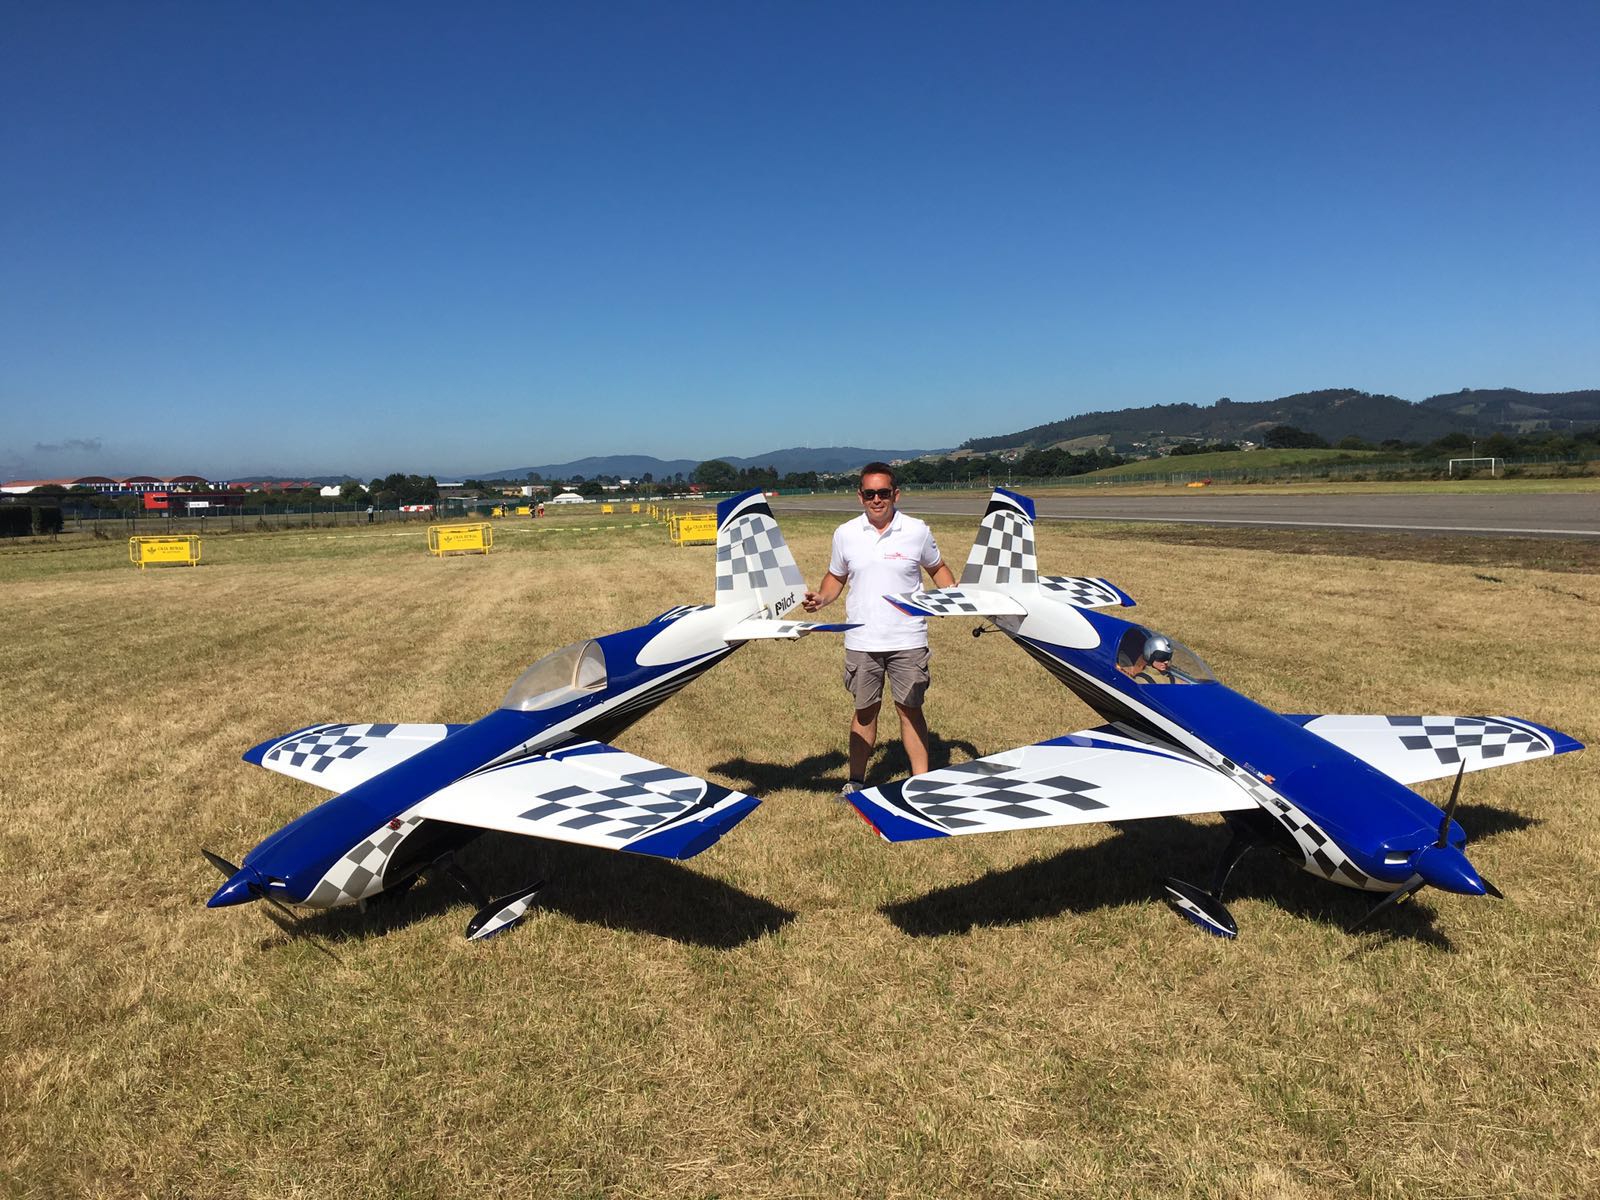 El Club de Aeromodelismo “Los Halcones” participa por primera vez en un Campeonato Internacional